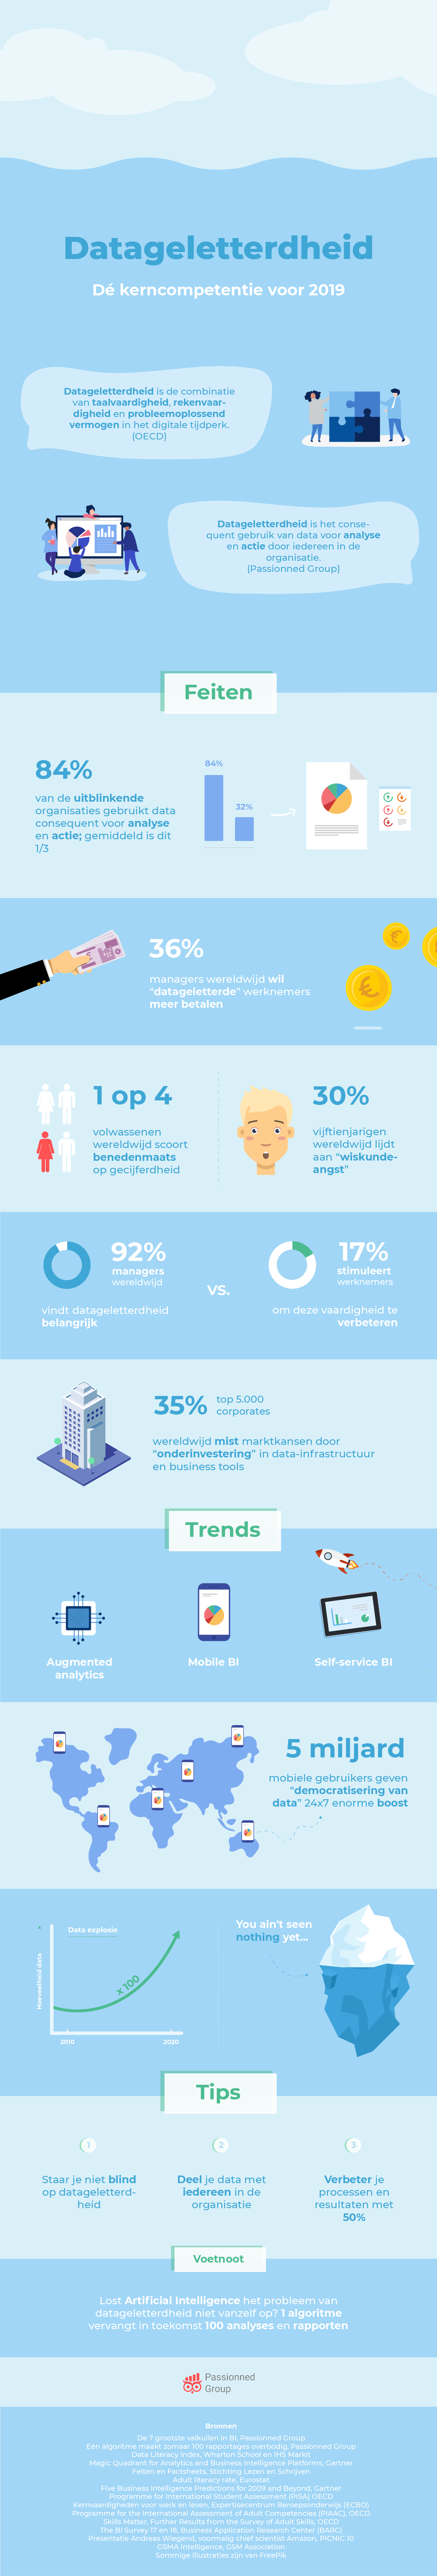 Infographic over datageletterdheid